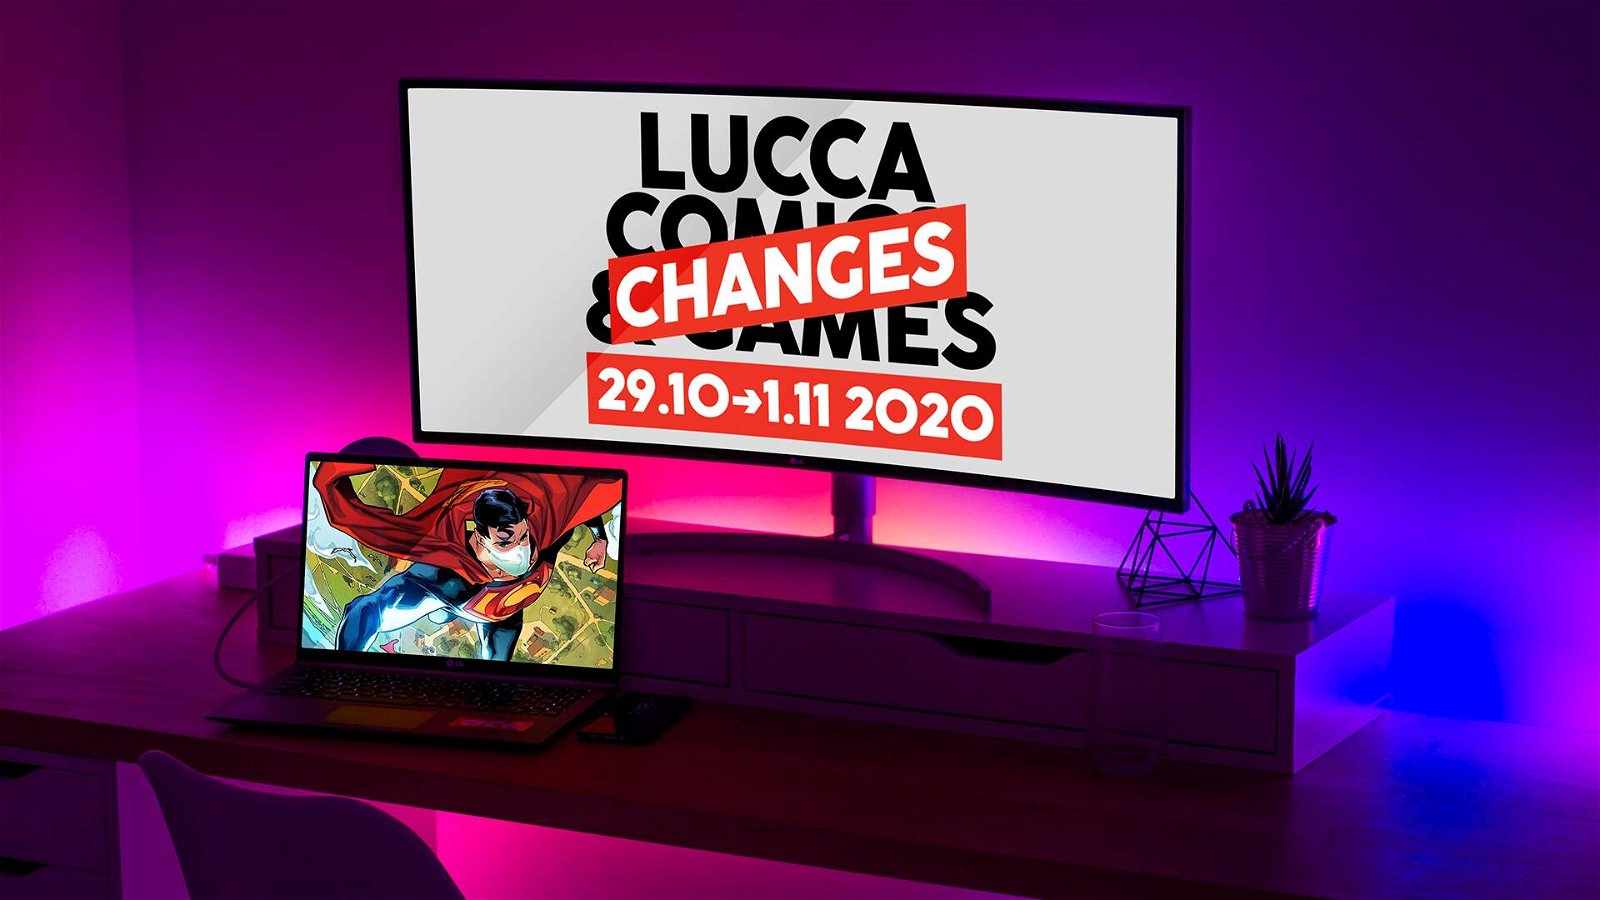 Immagine di Lucca Changes: tutti gli eventi game del 31 ottobre